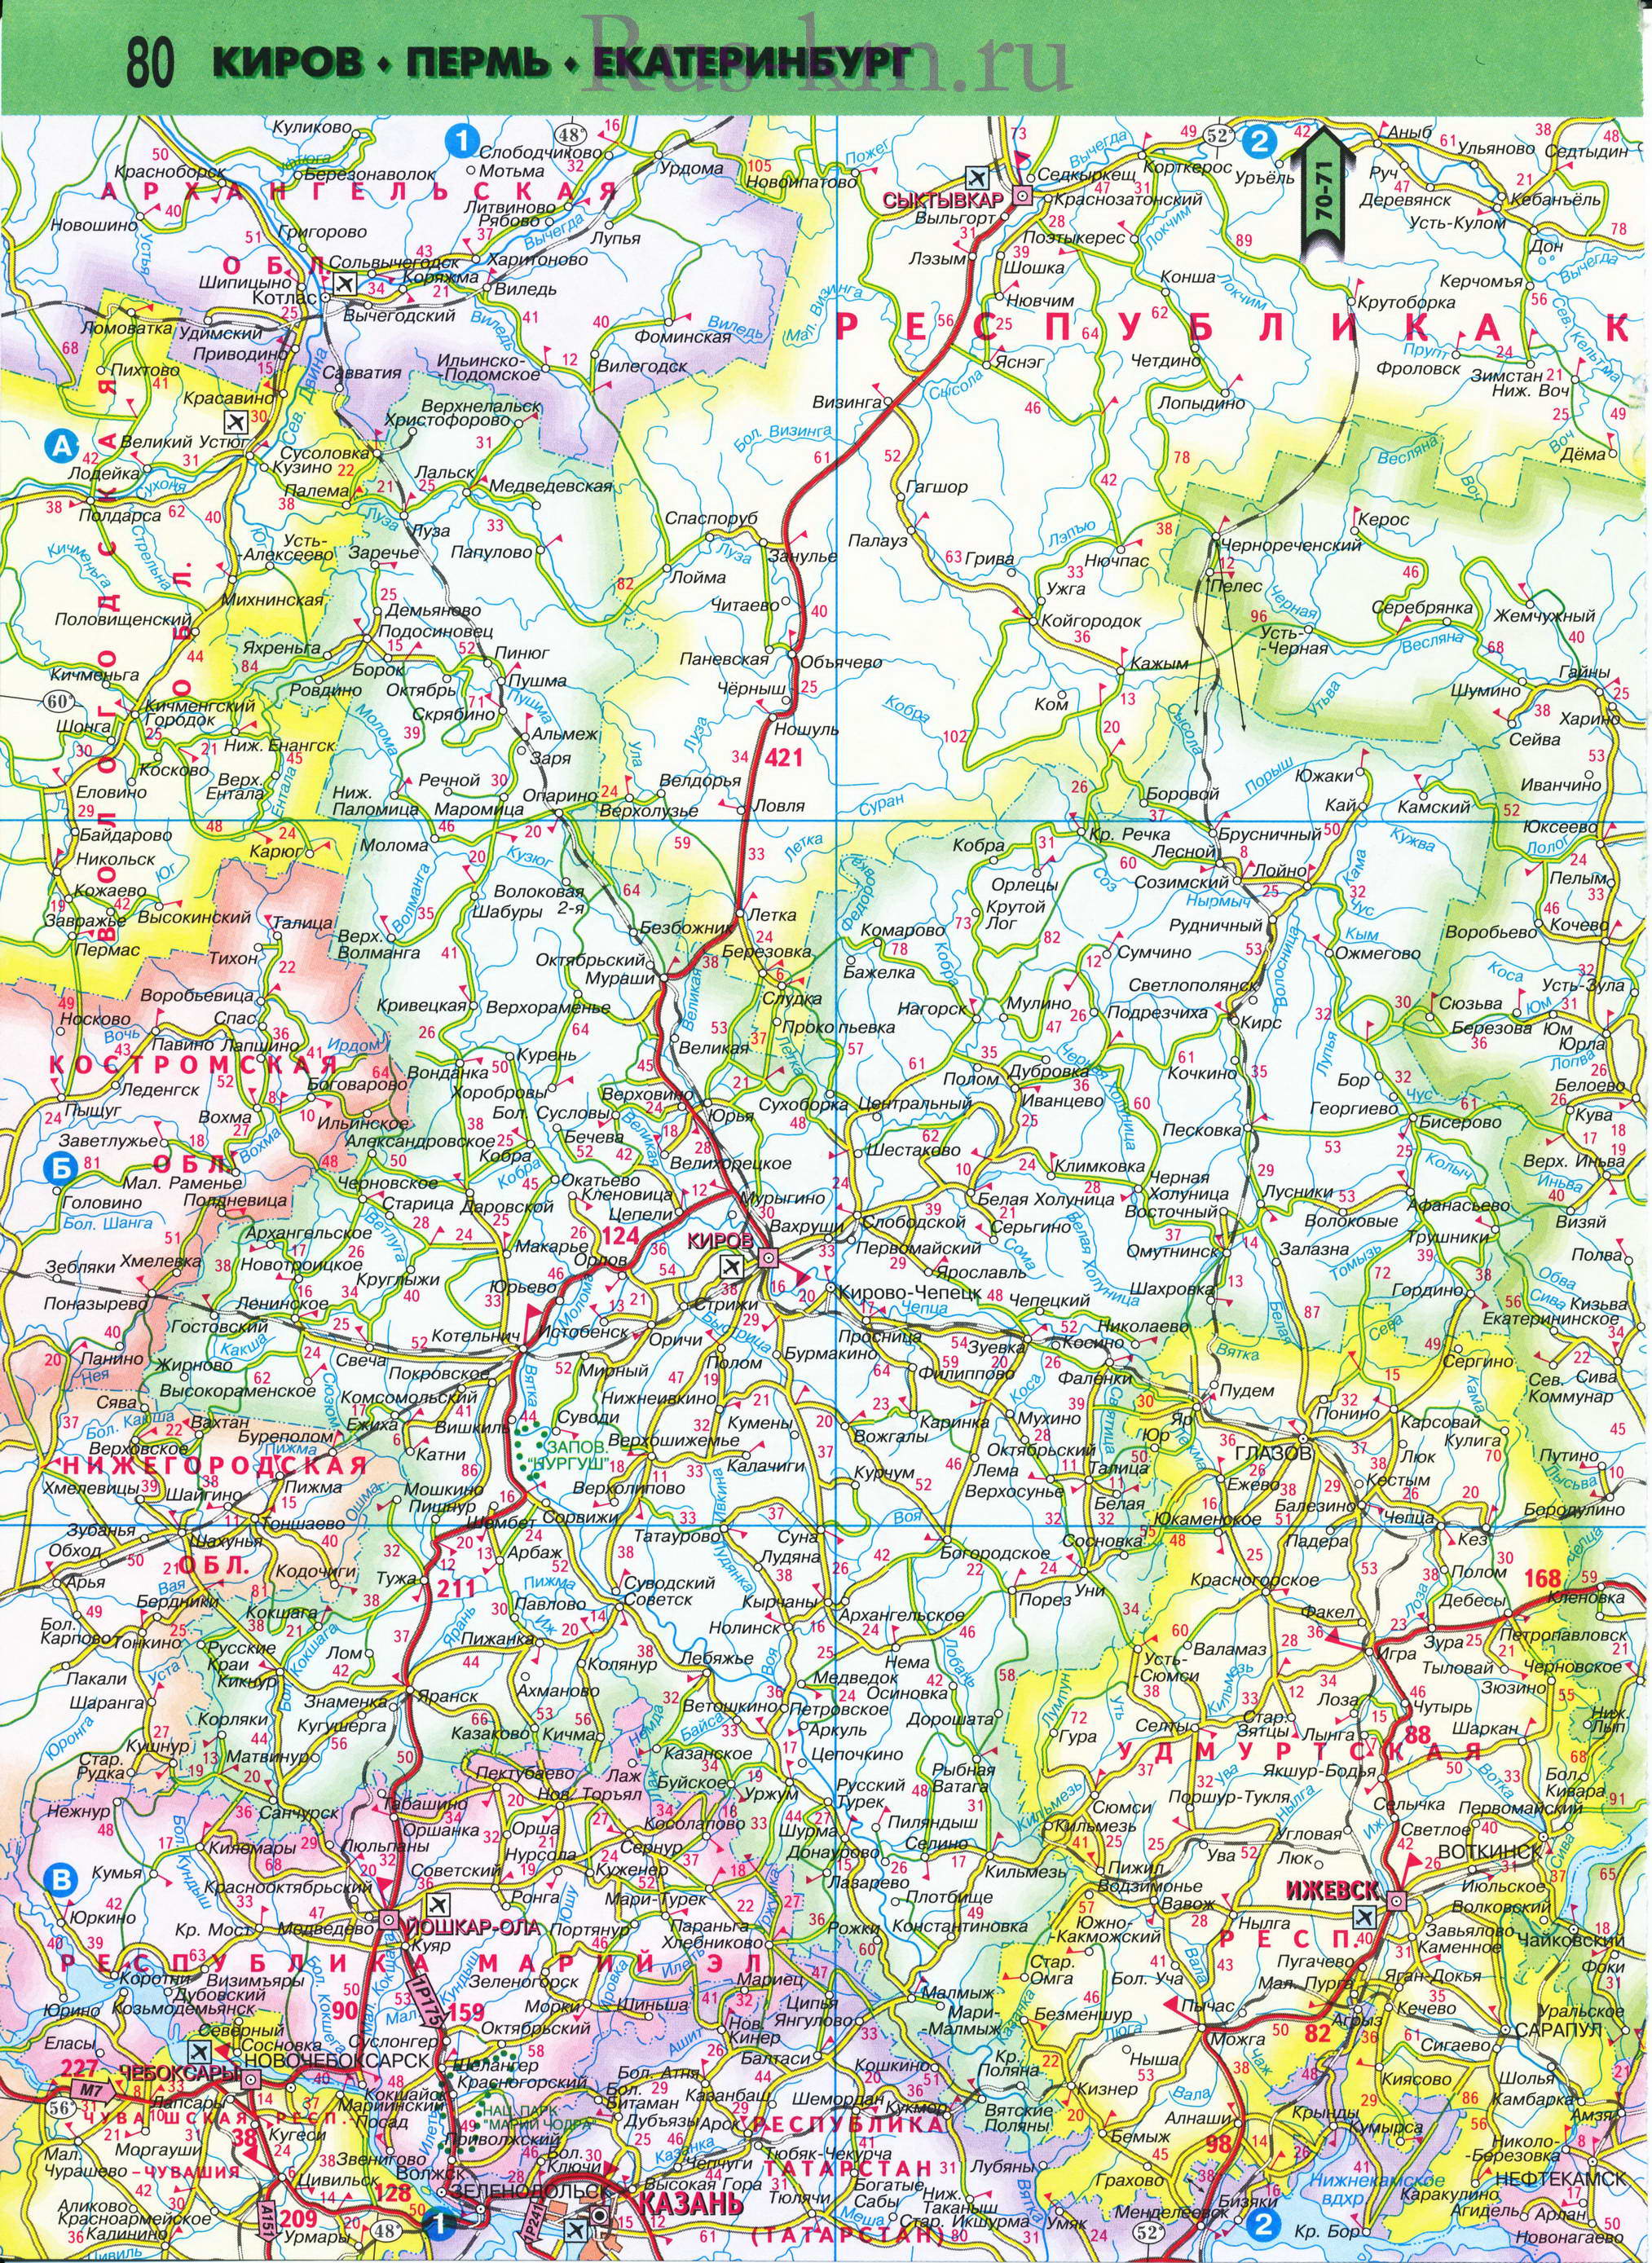 Карта Удмуртии. Дорожная карта Удмуртии и соседних регионов 2011 года, масштаб 1см:25км, A0 - 